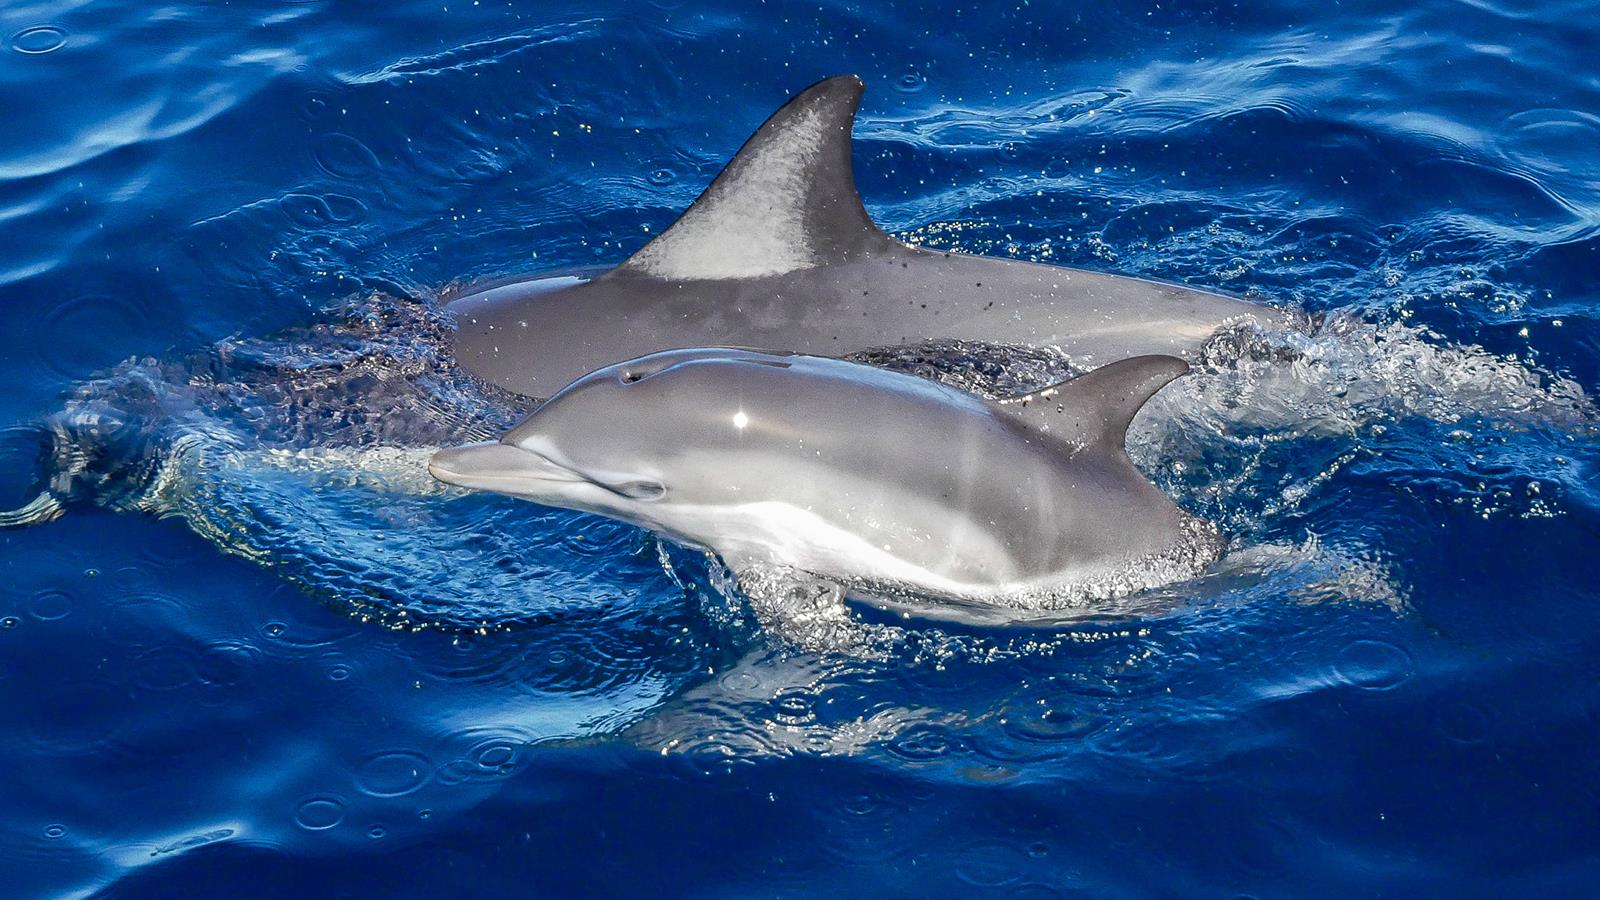 Dolphin Blue
Dolphin Blue